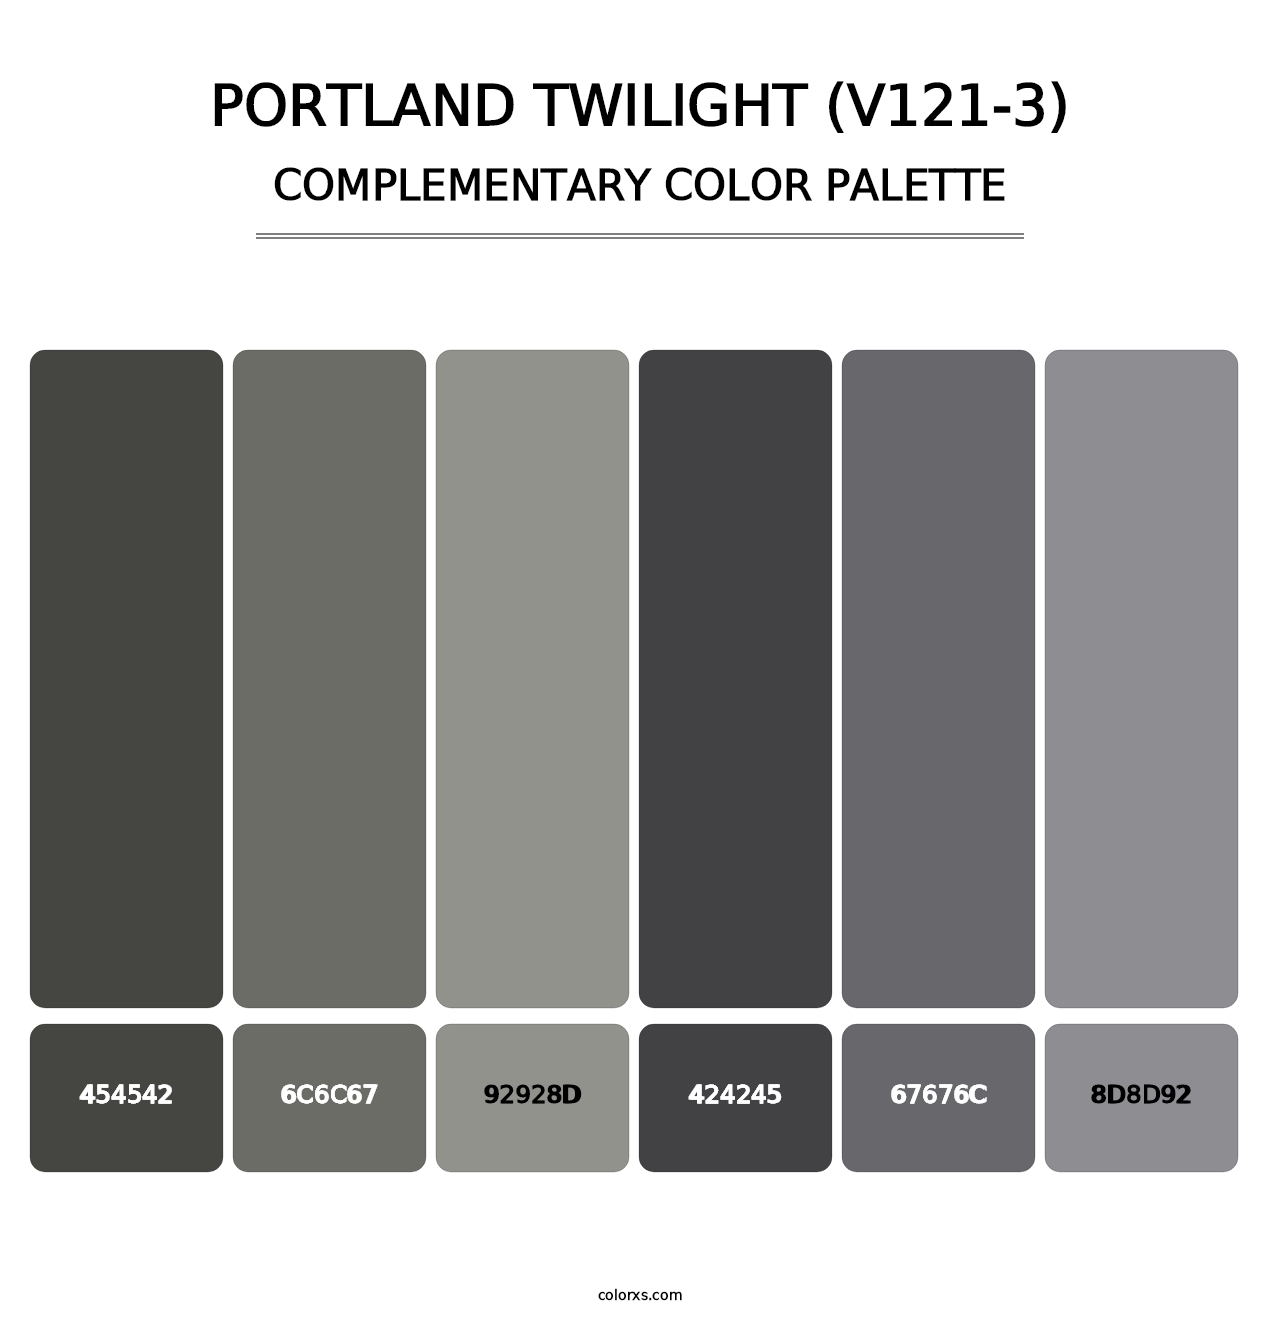 Portland Twilight (V121-3) - Complementary Color Palette